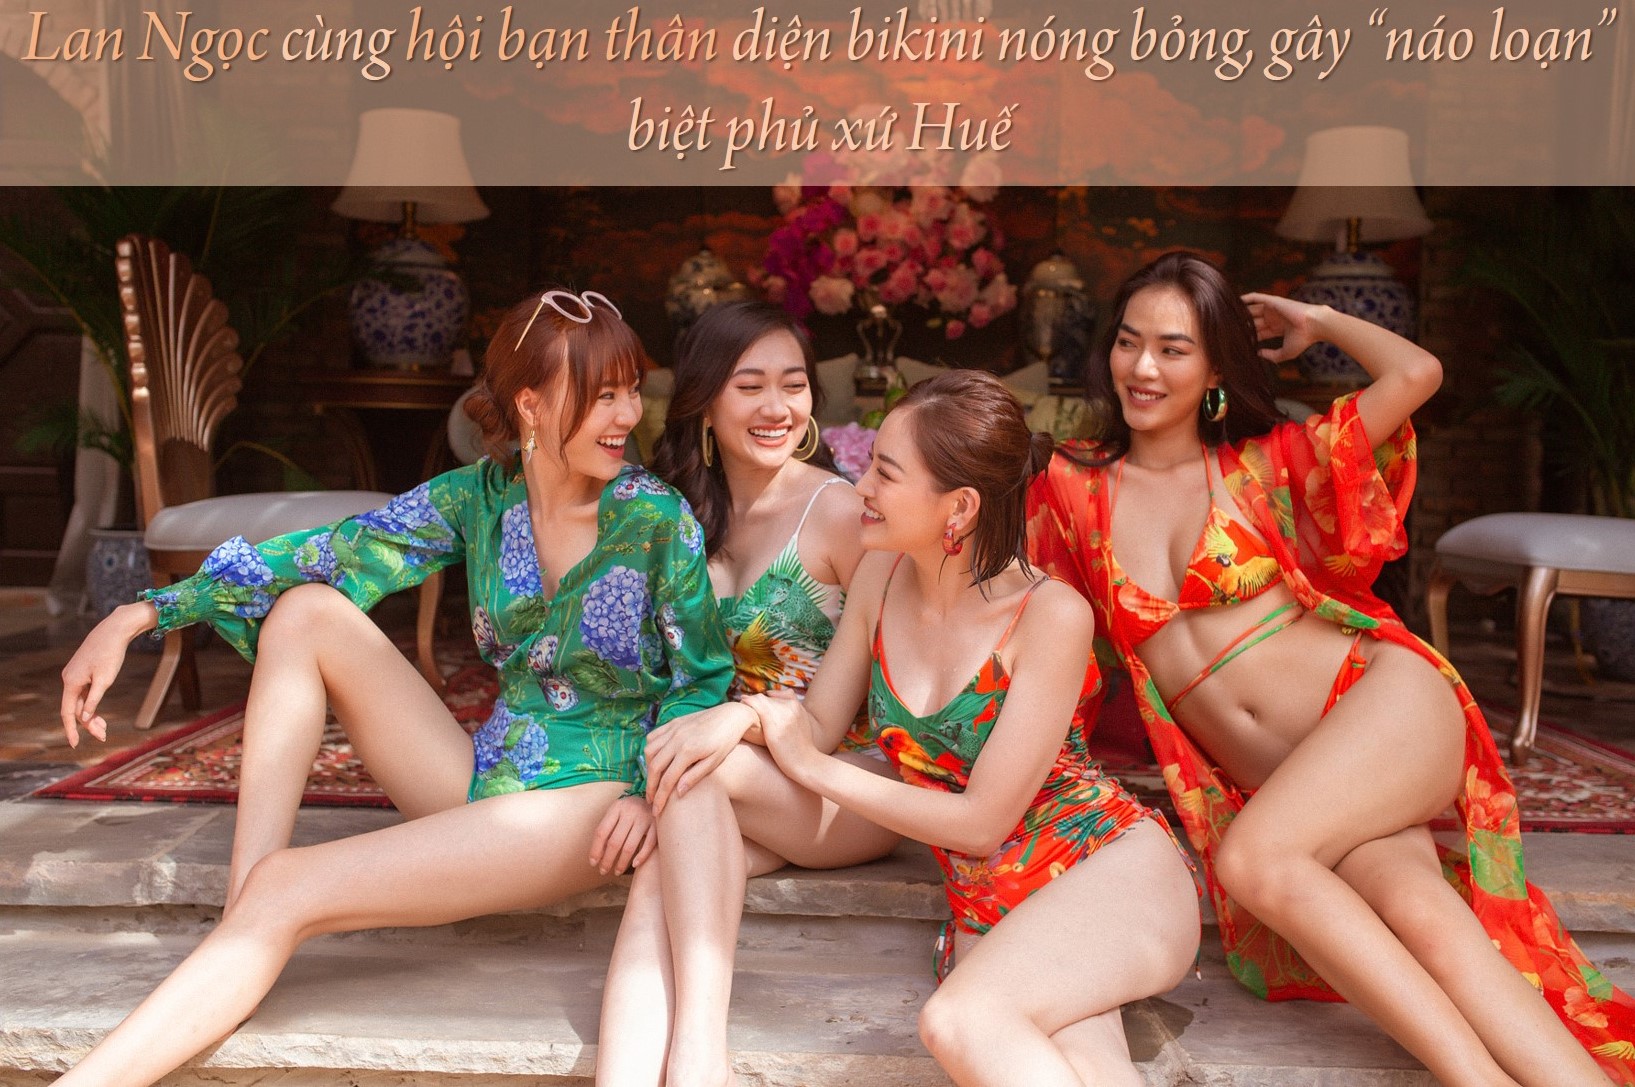 Lan Ngọc cùng hội bạn thân diện bikini nóng bỏng, gây &#34;náo loạn&#34; biệt phủ xứ Huế - 1